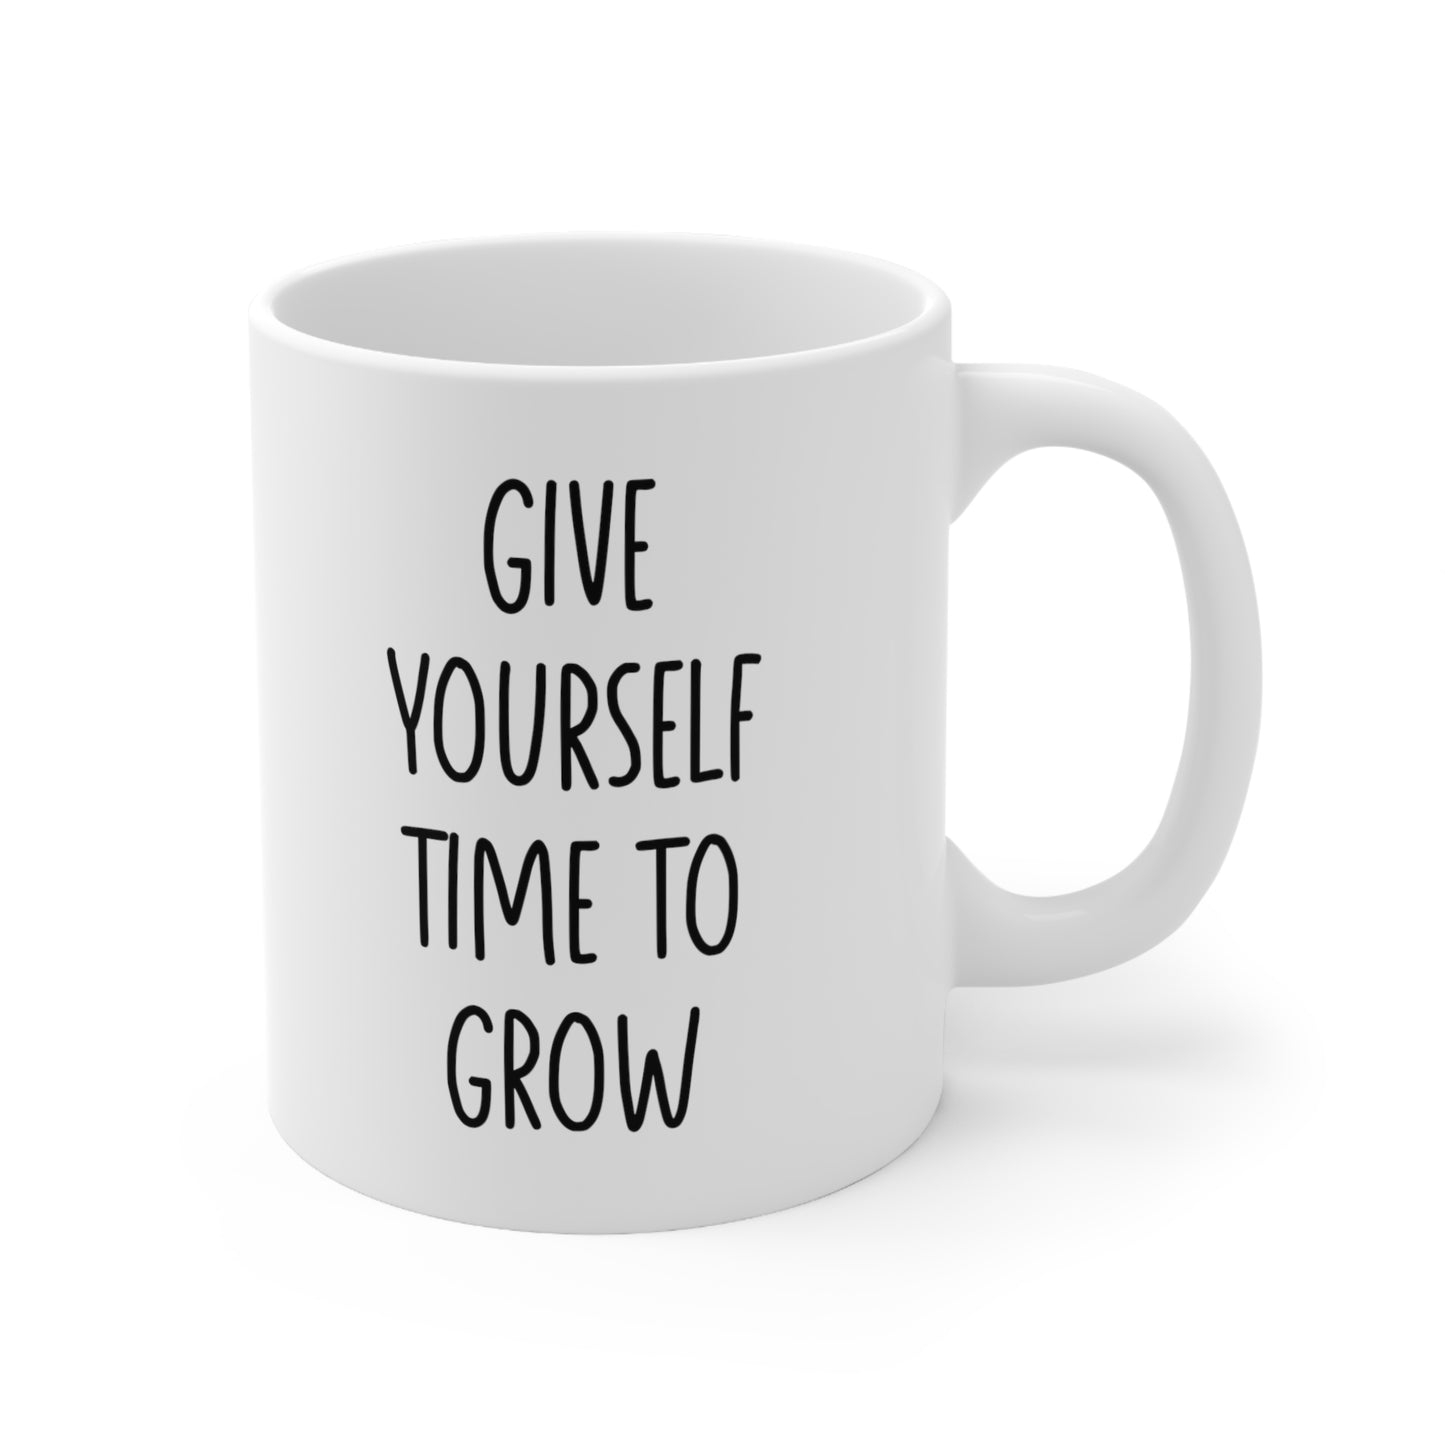 Give Yourself Time to Grow Coffee Mug 11oz